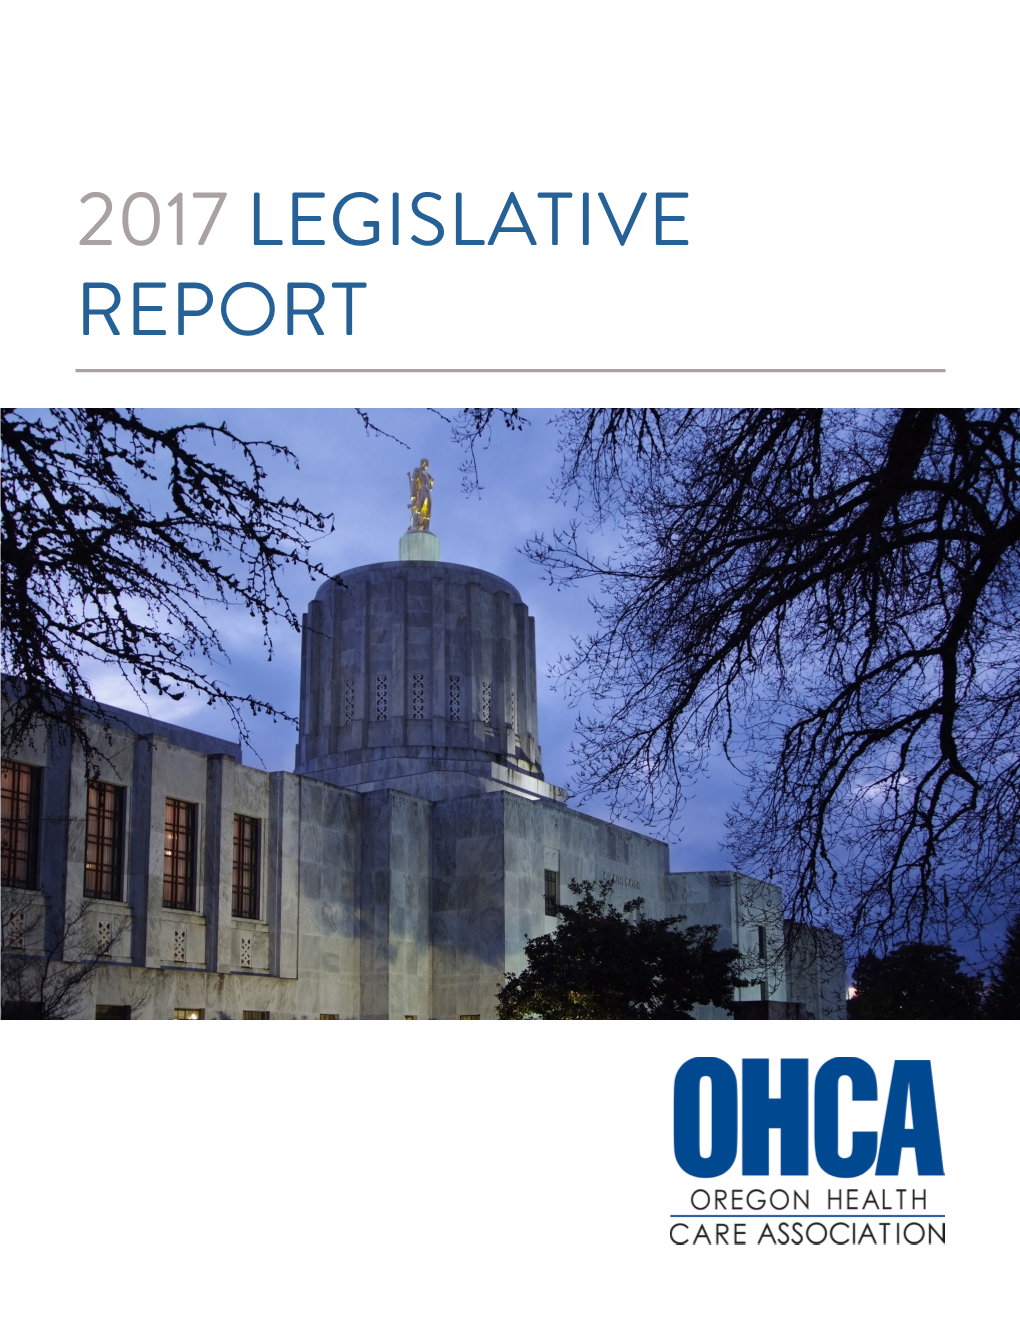 2017 Legislative Report Letter from the President